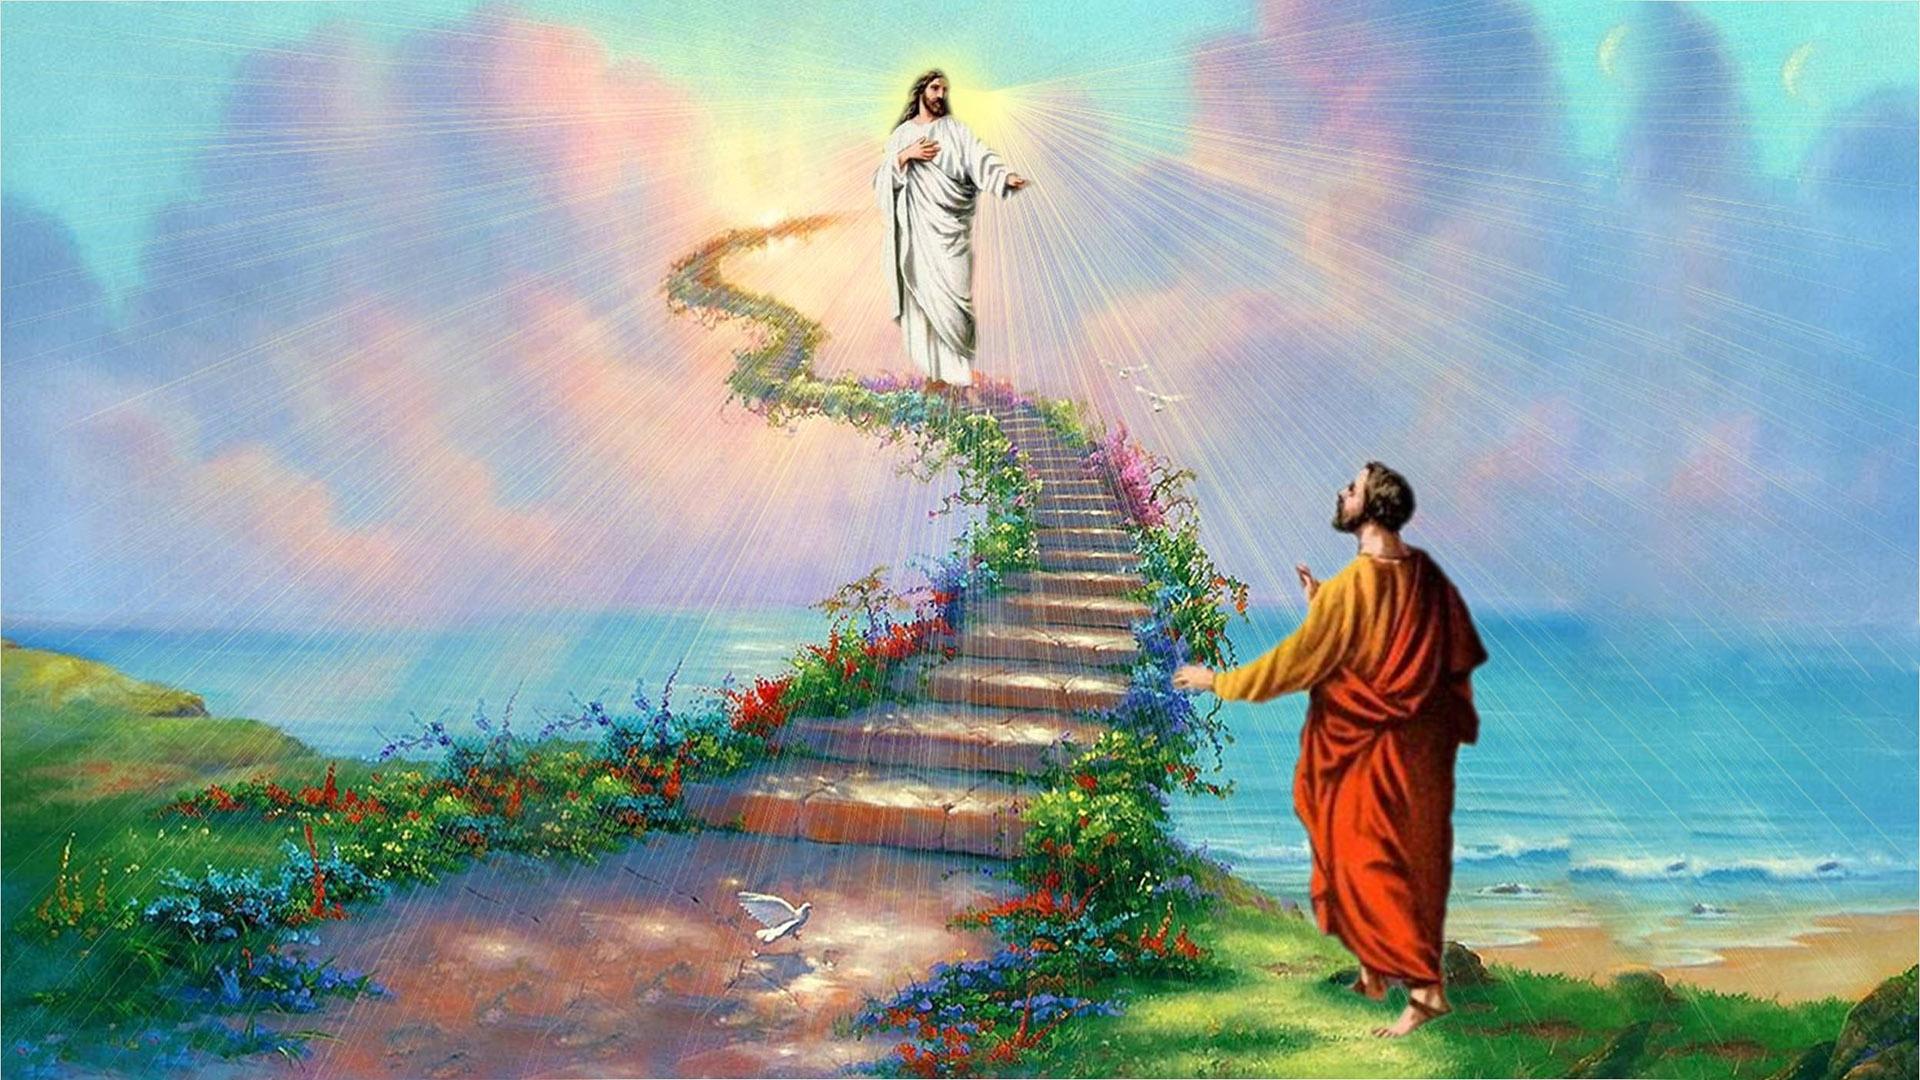 Jesus In Heaven Wallpaper Hd